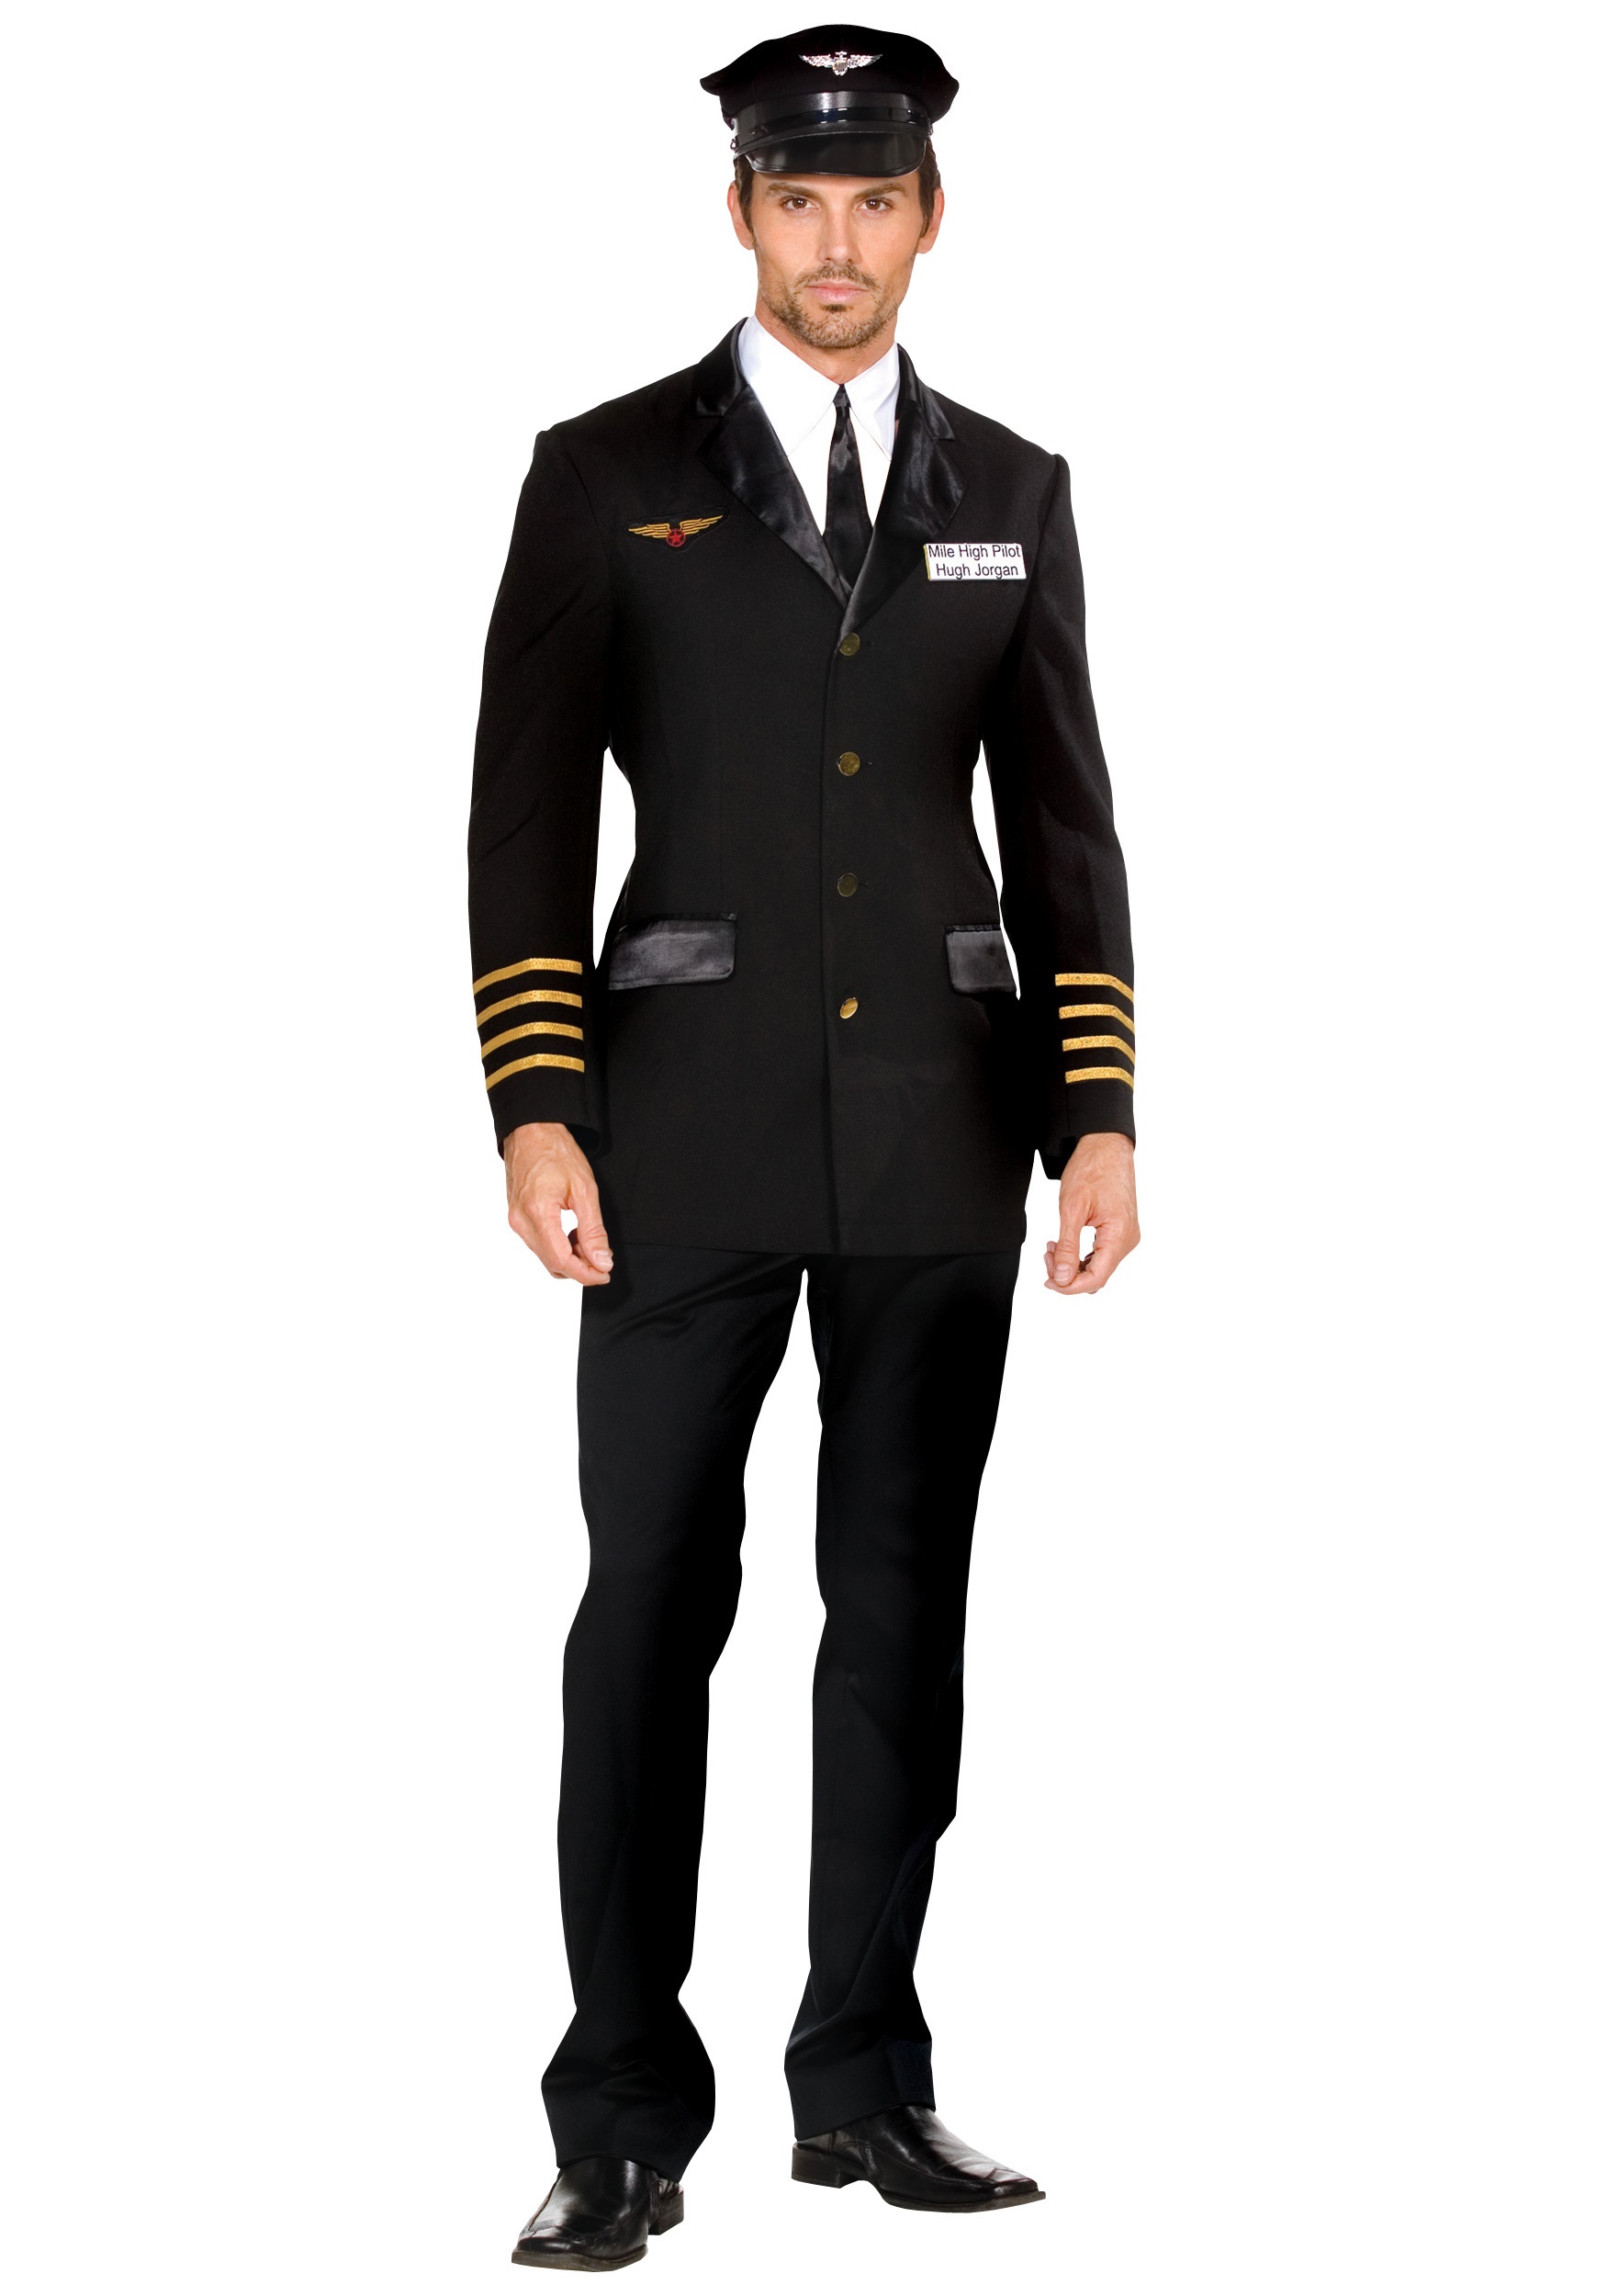 Men’s Mile High Pilot Costume